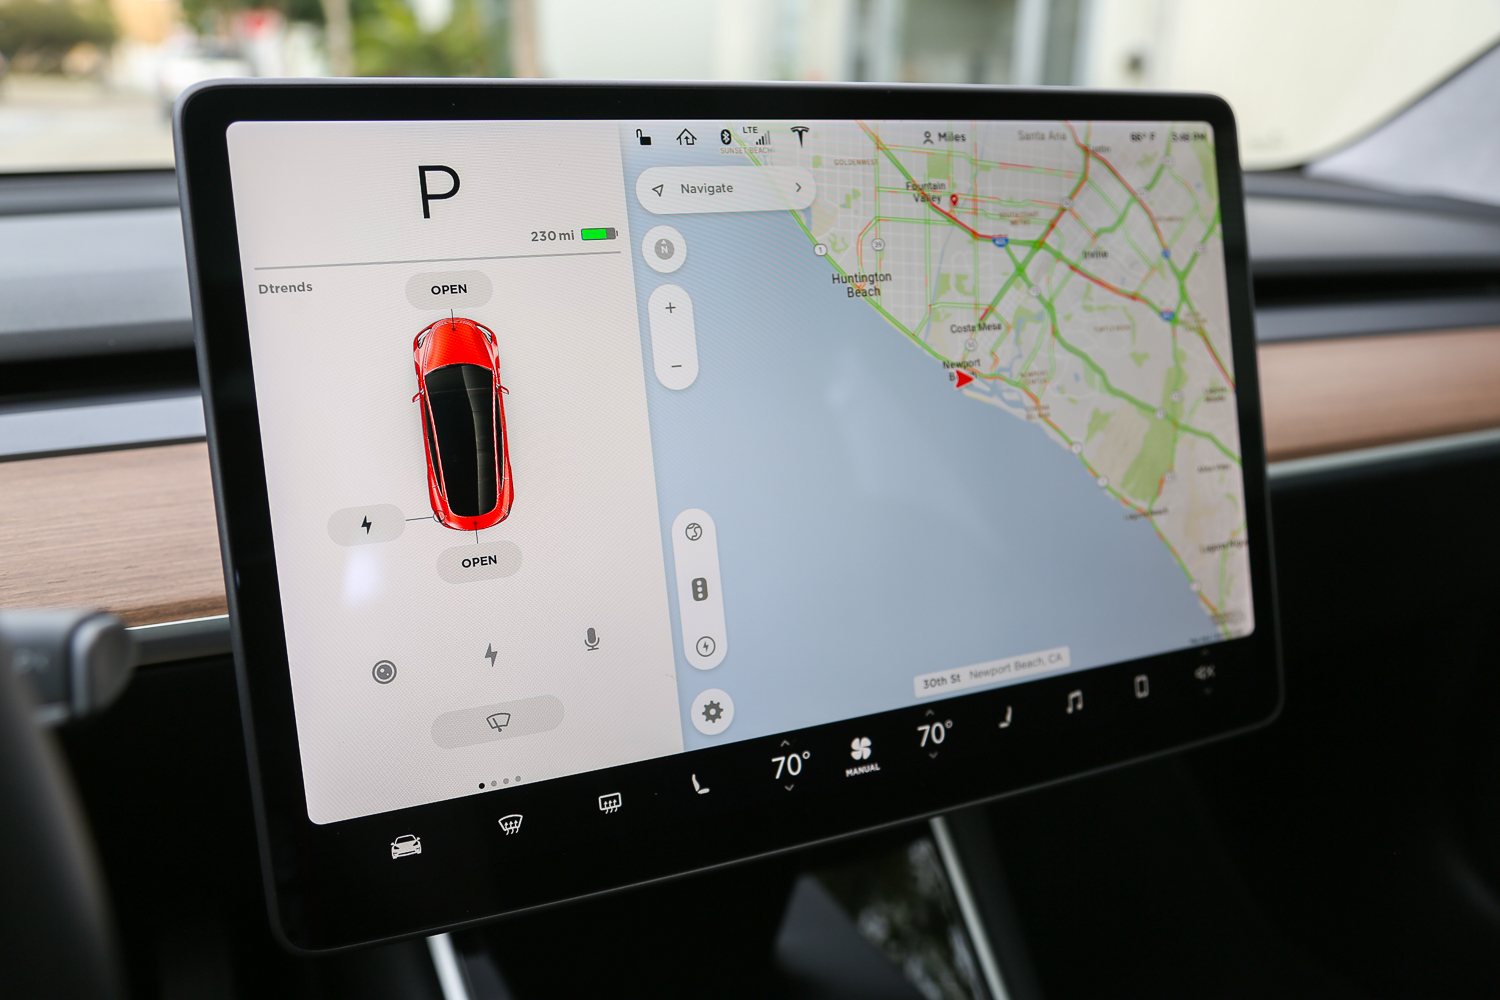 Tesla V9.0 - Autopilot: Khám phá công nghệ Autopilot mới nhất của Tesla V9.0 để trải nghiệm lái xe tự động tuyệt vời như chưa từng có. Tự tin mà không cần phải điều khiển, hệ thống này sẽ giúp bạn di chuyển thông minh và an toàn hơn trên mọi con đường.